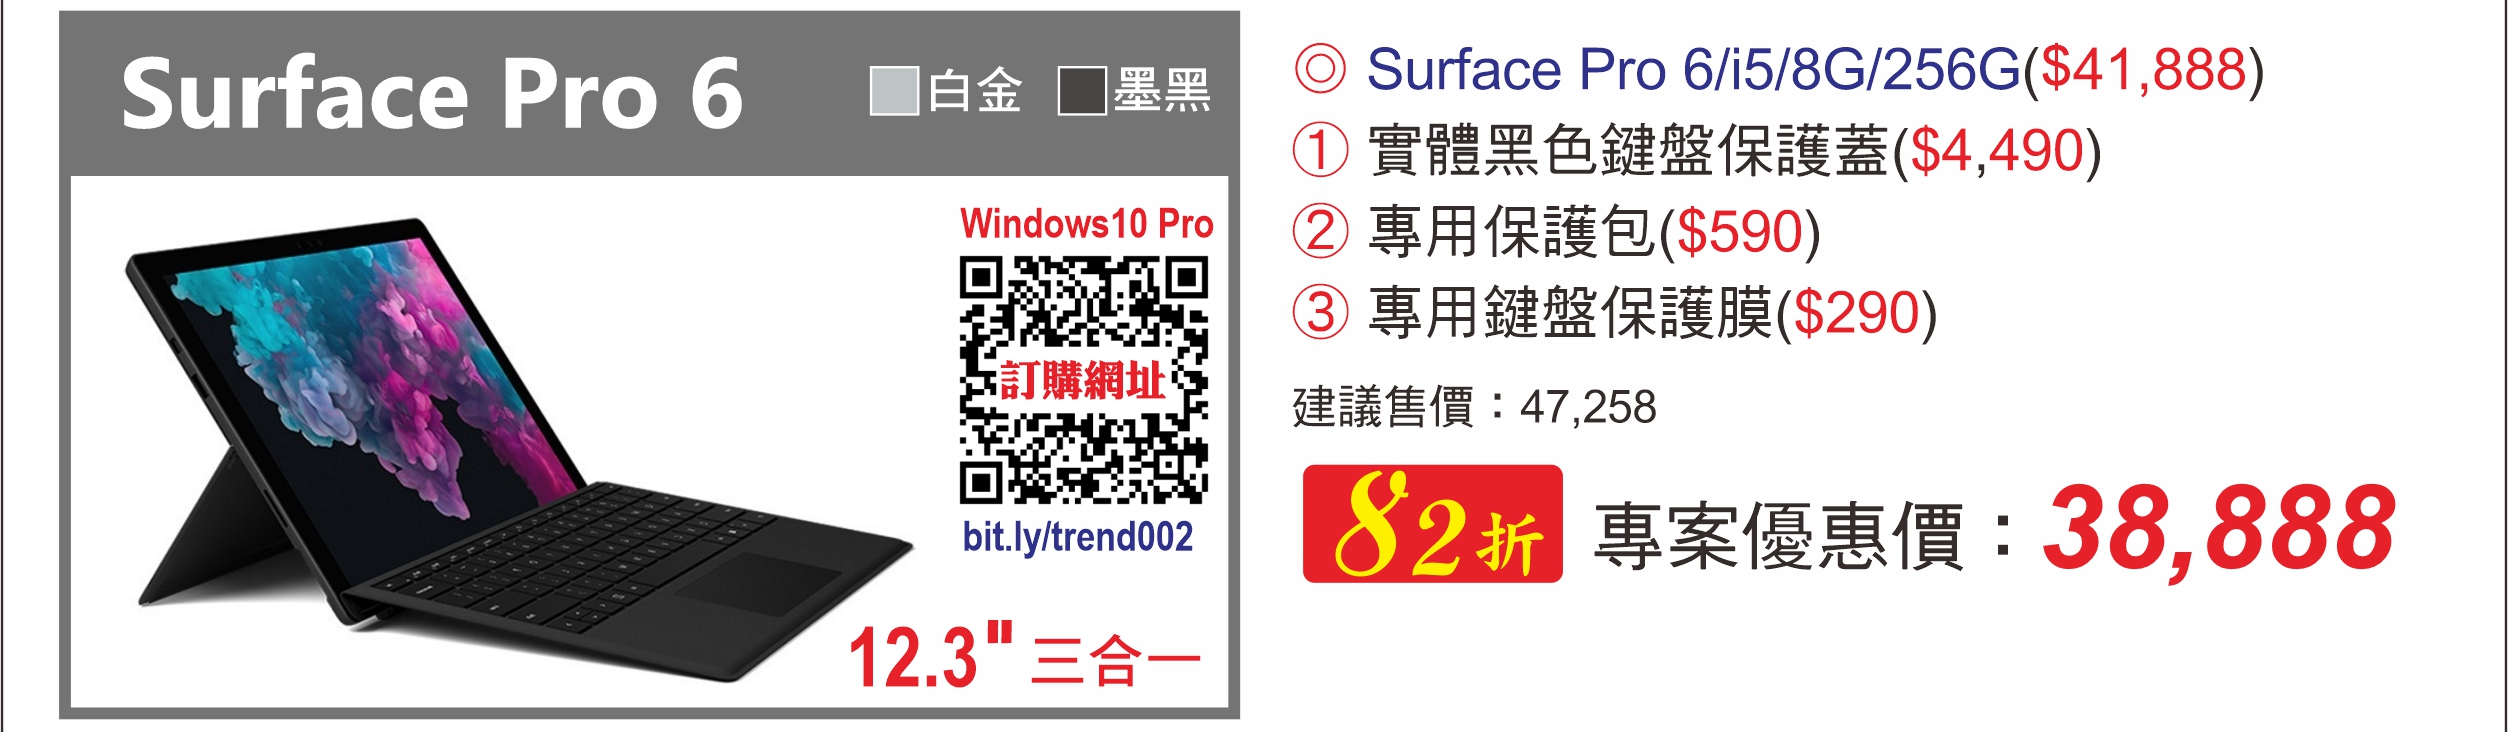 Surface Pro 6 i5/8G/256G 白金|墨黑 (趨勢員購)